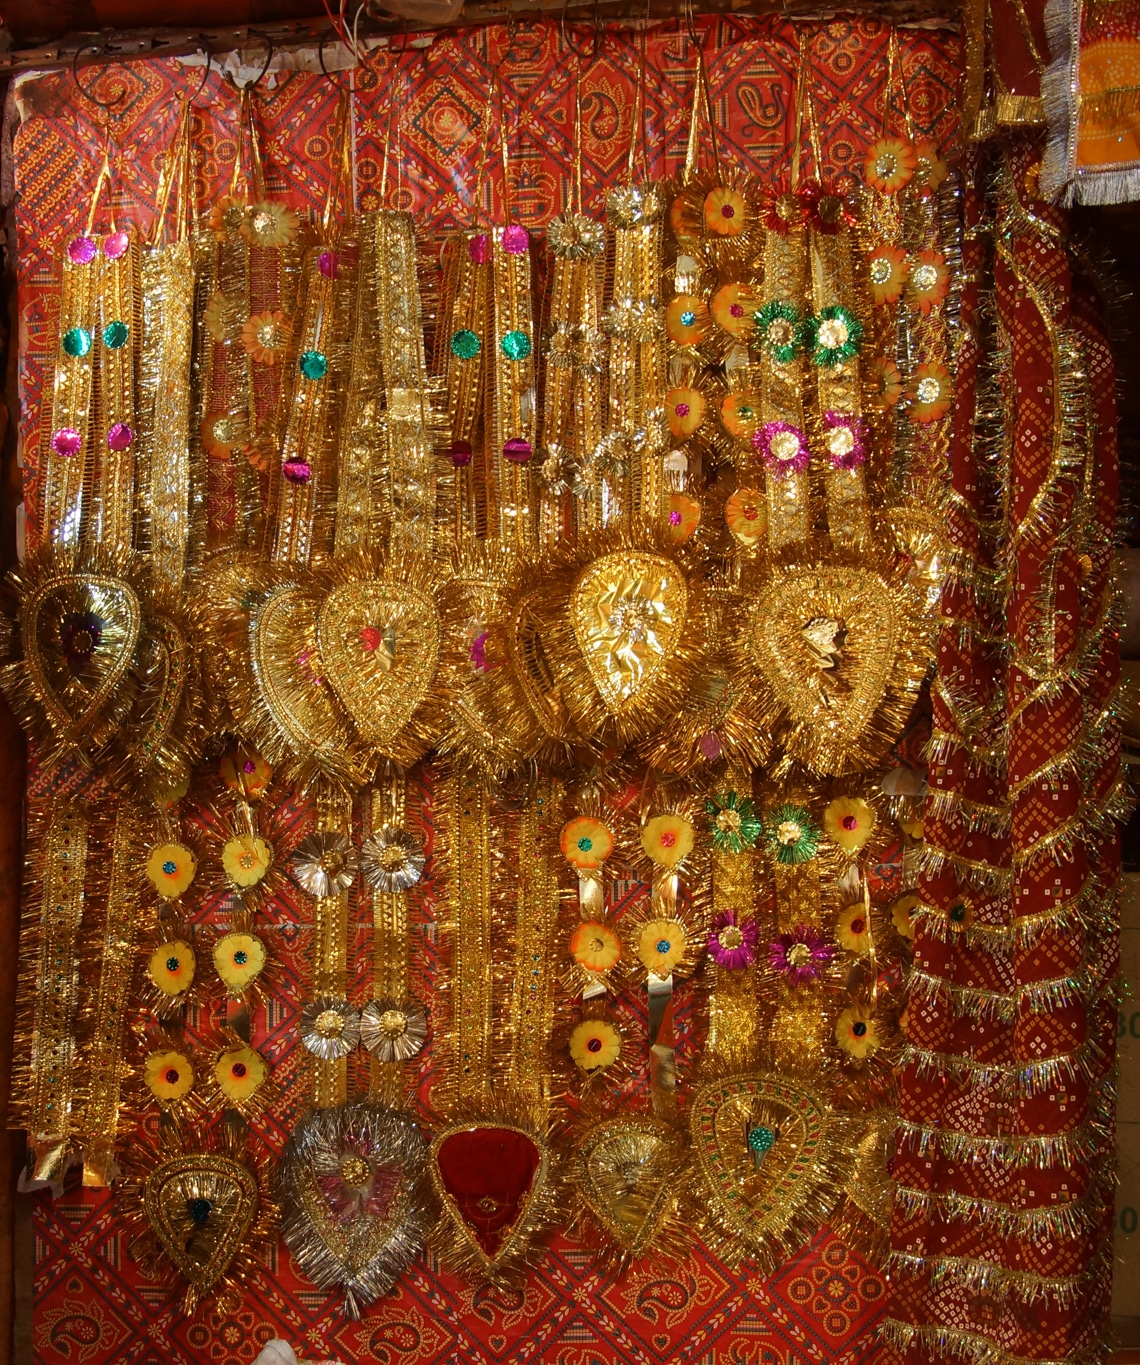 flamboyant étalage de décorations de statues dans une boutique à Varanasi Lors de mes voyages en Inde